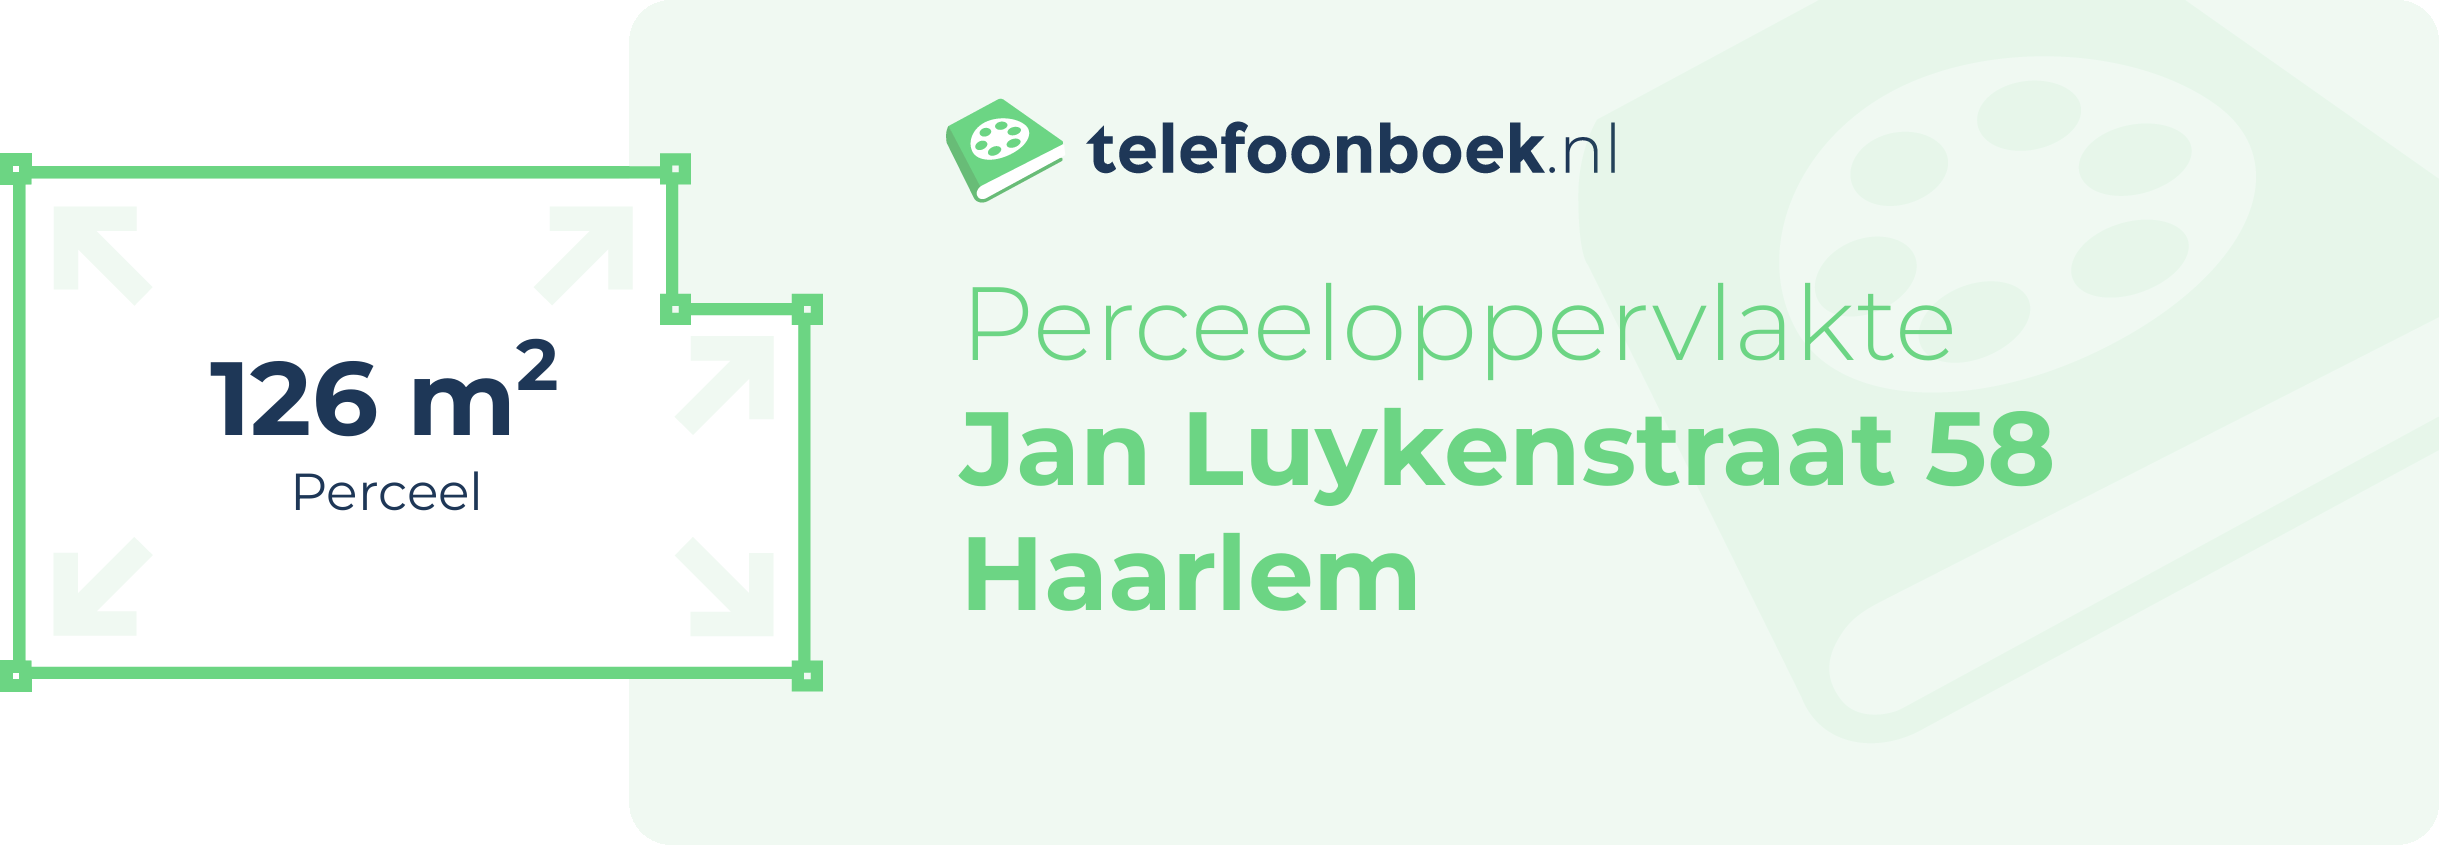 Perceeloppervlakte Jan Luykenstraat 58 Haarlem